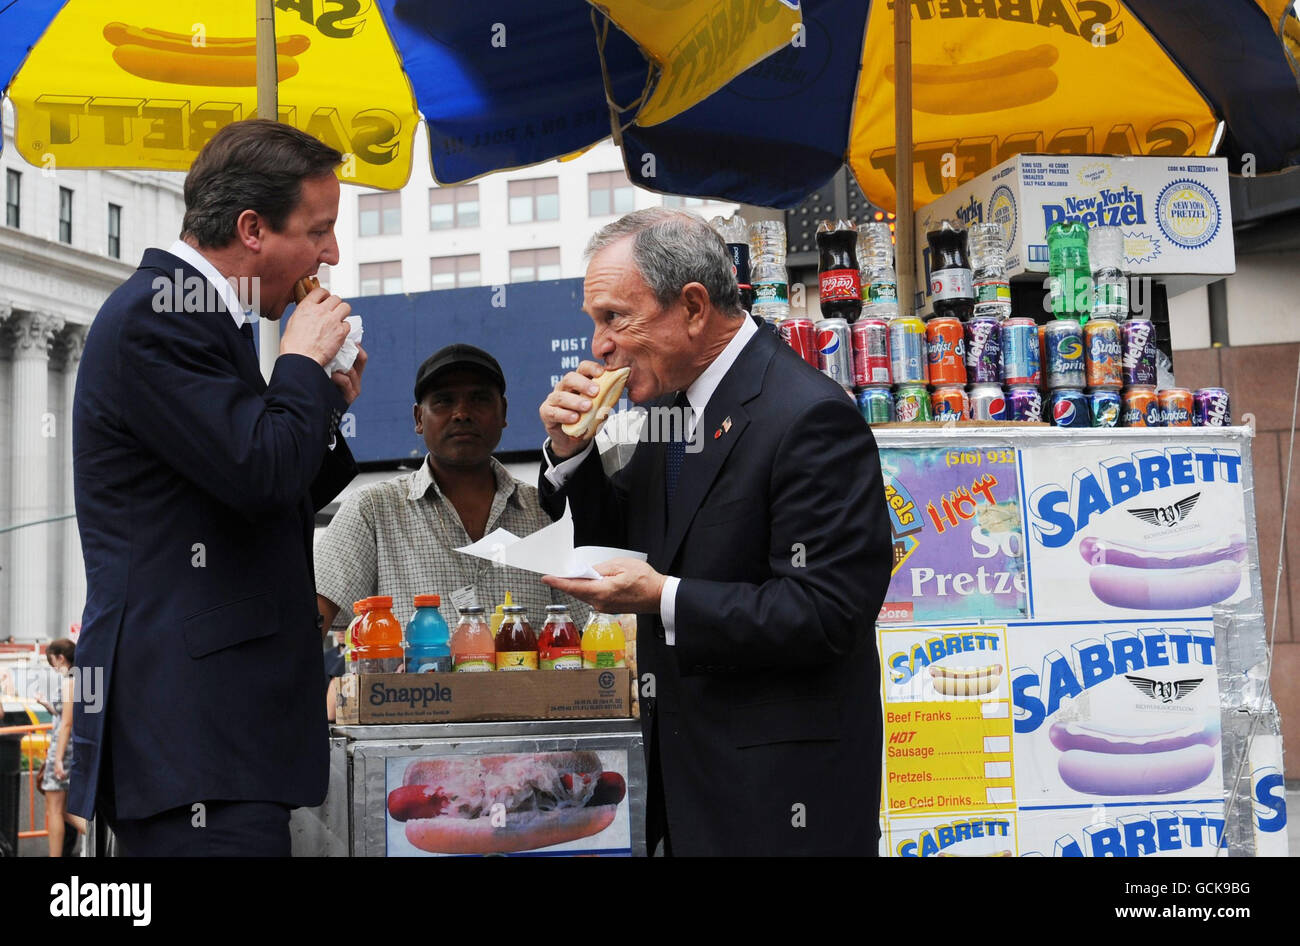 Premierminister David Cameron genießt einen Hotdog mit dem New Yorker Bürgermeister Michael Bloomberg, als er heute im Rahmen seines zweitägigen Besuchs in den USA von Washington DC in der Penn Station ankam. Stockfoto